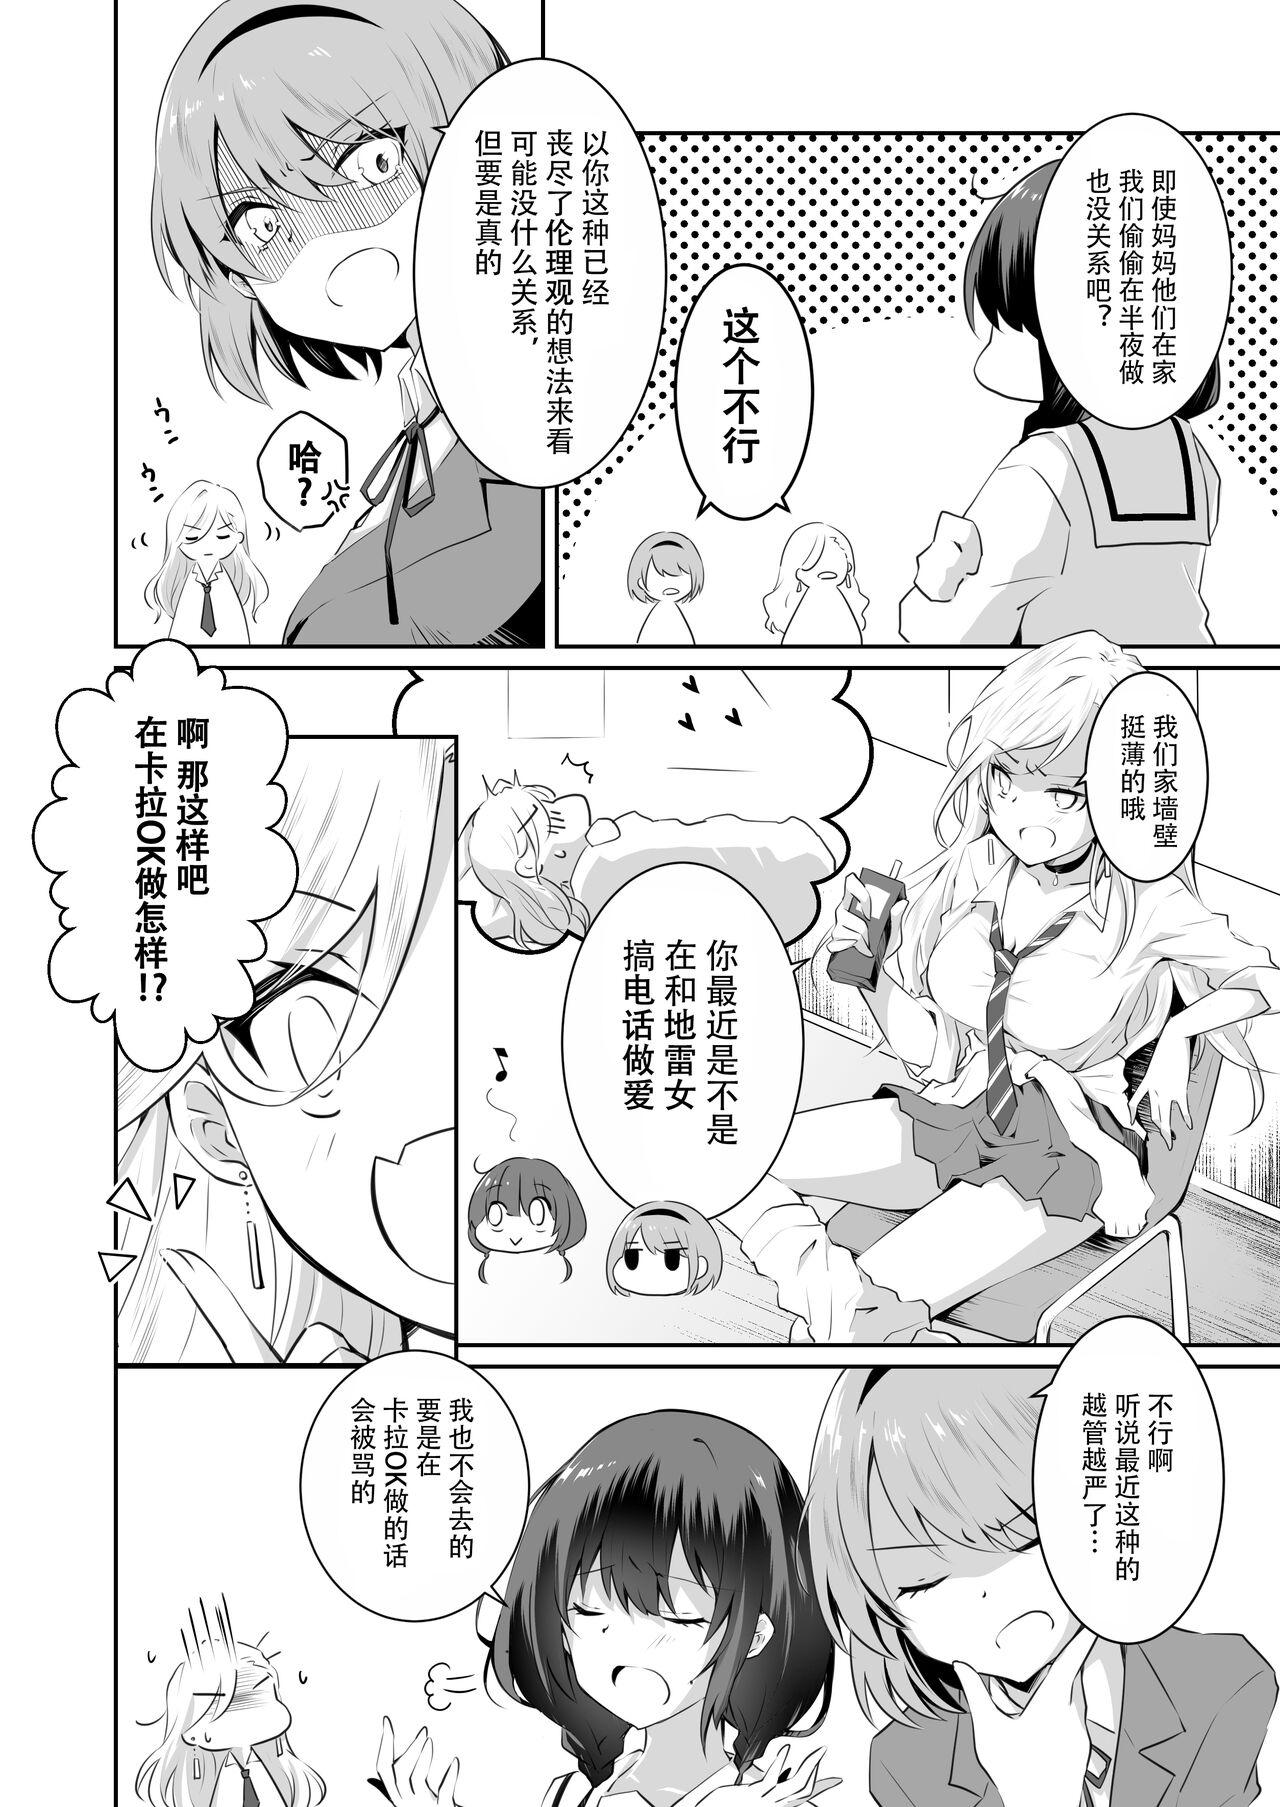 Nurumassage 家庭内売春2 NICOLAI - Original Uncut - Page 9